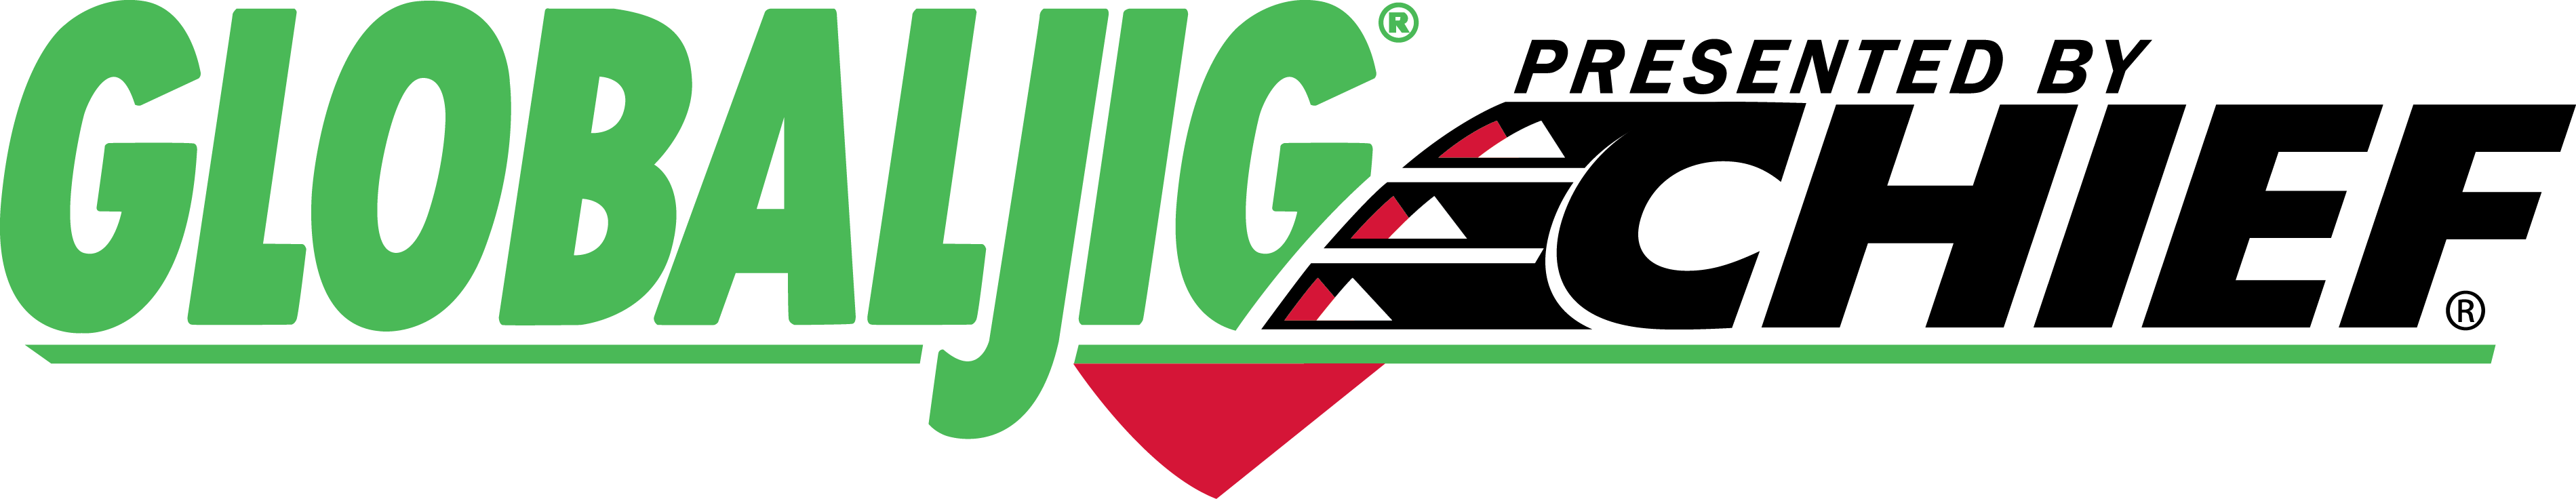 Globaljig_Logo_Standard.png